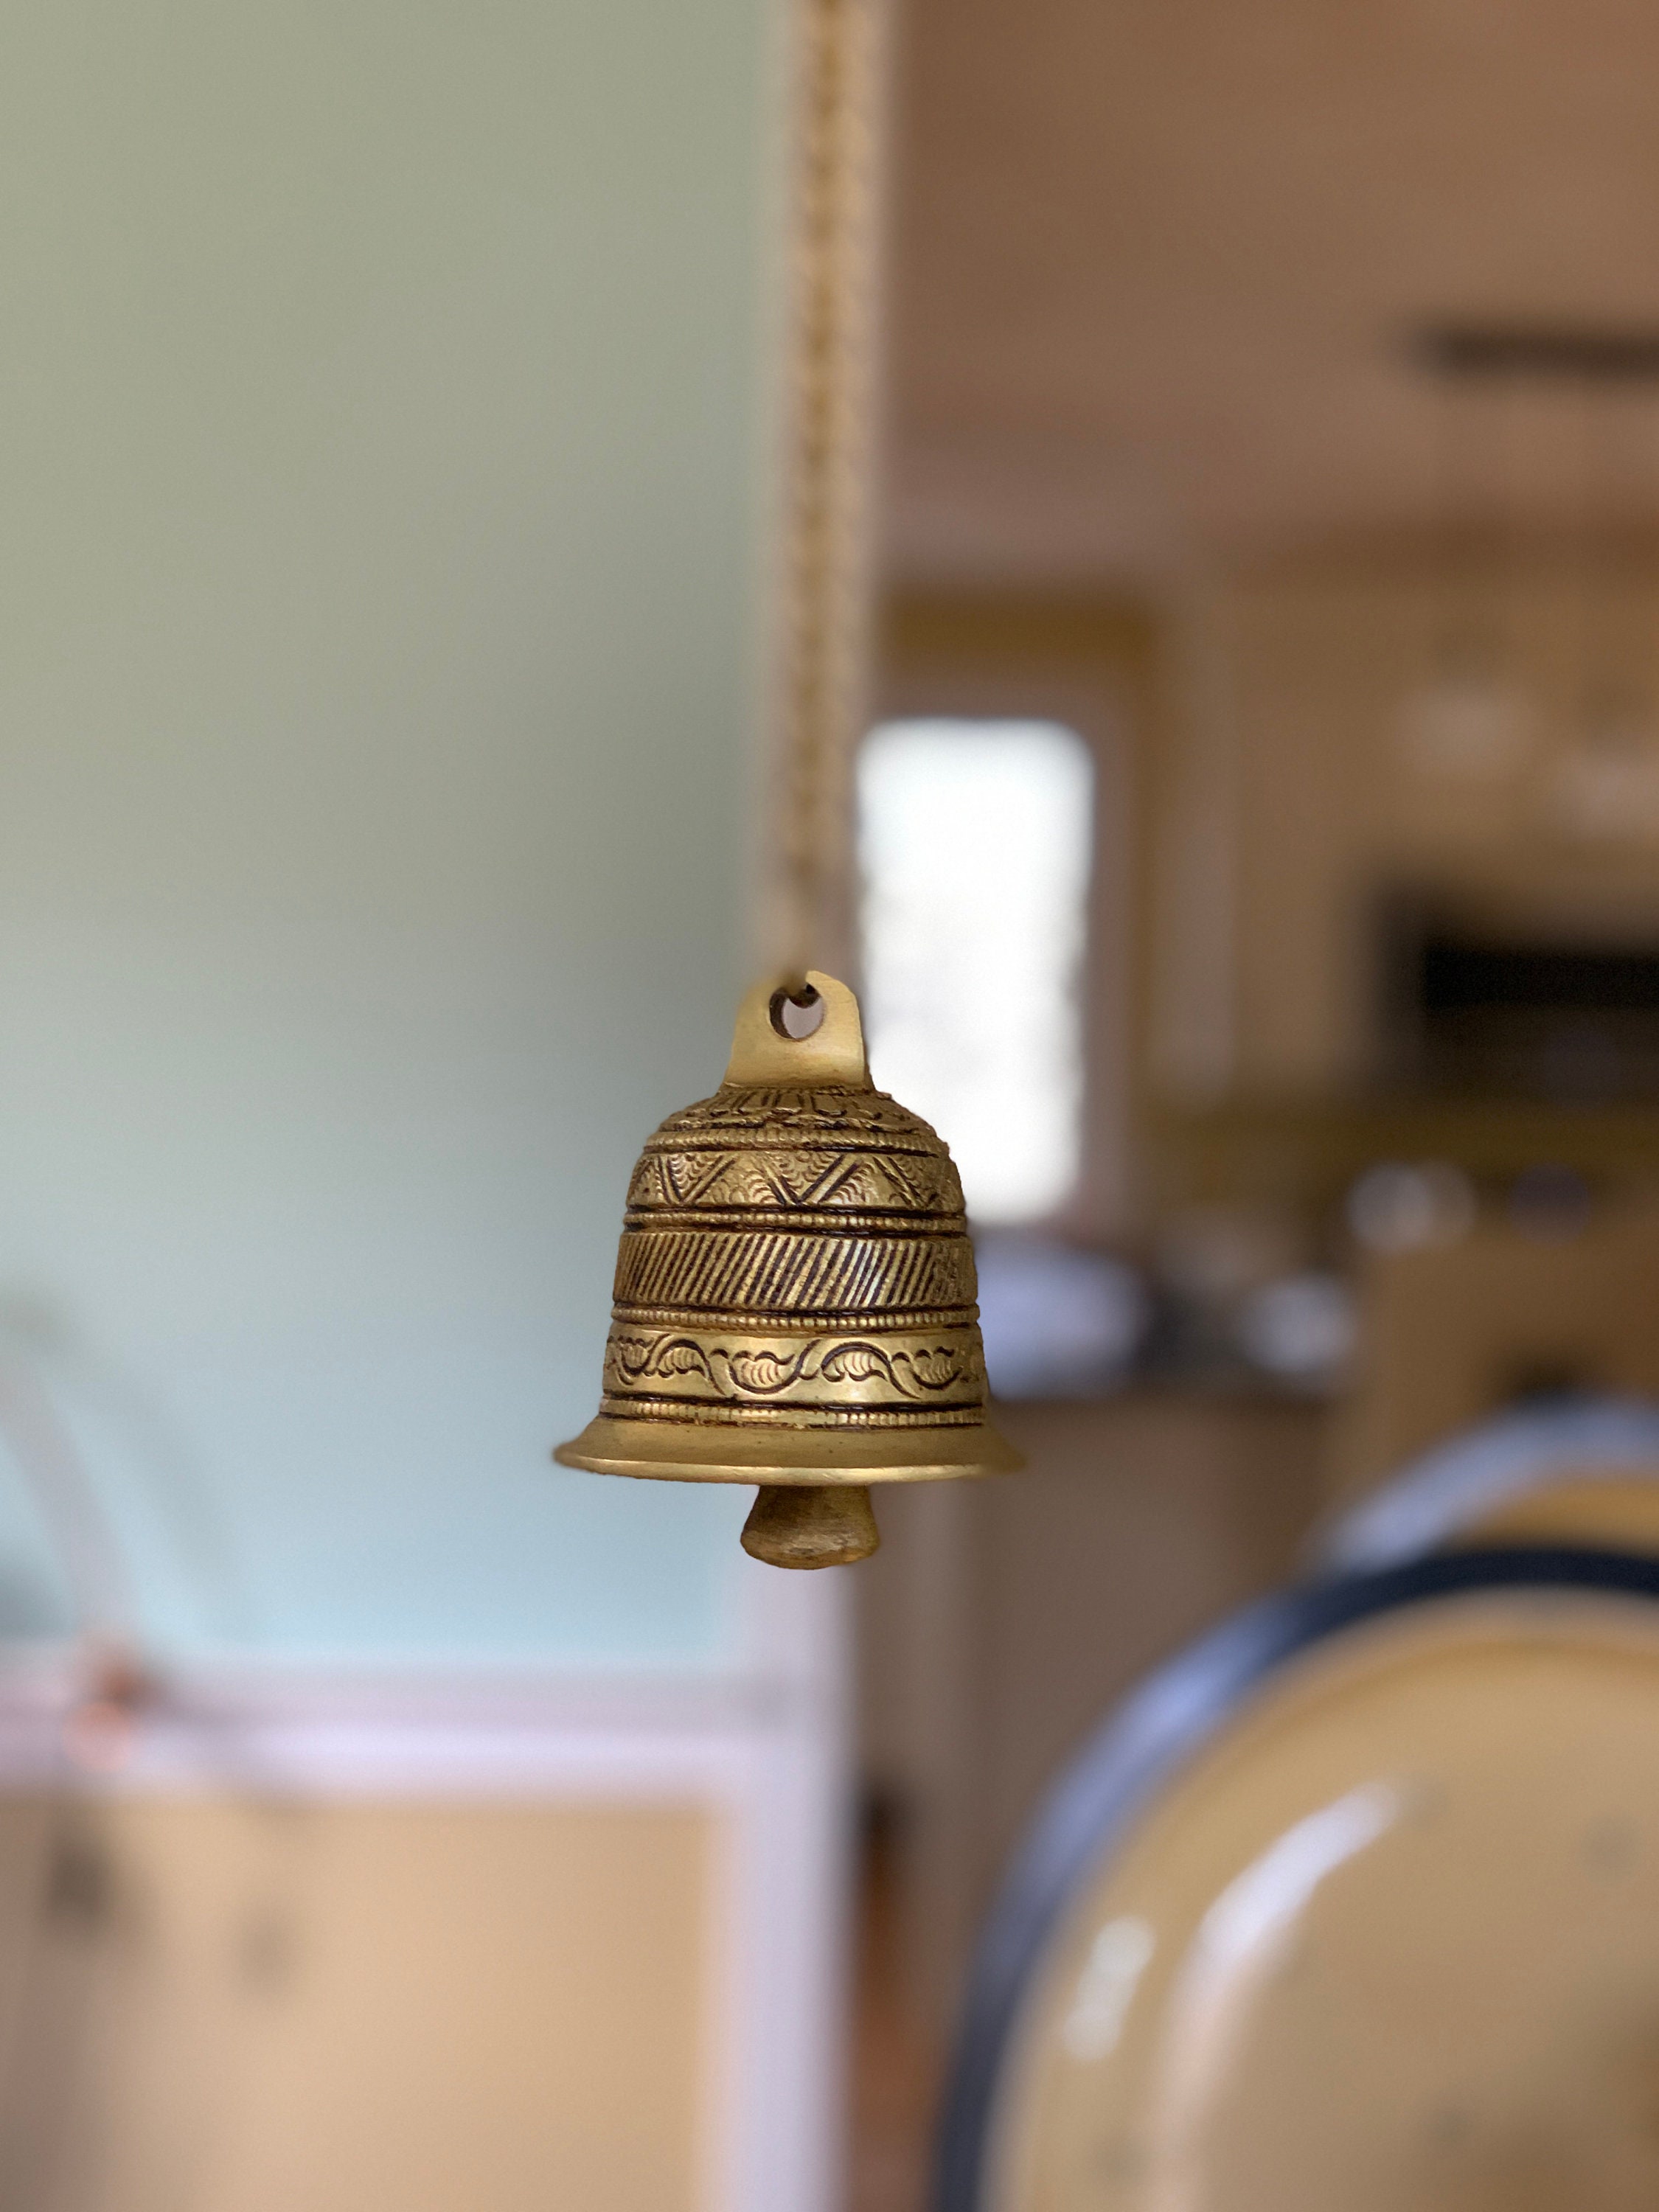 Beautiful Golden Metal Bells Little Bell Tiny Bells Brass Bell